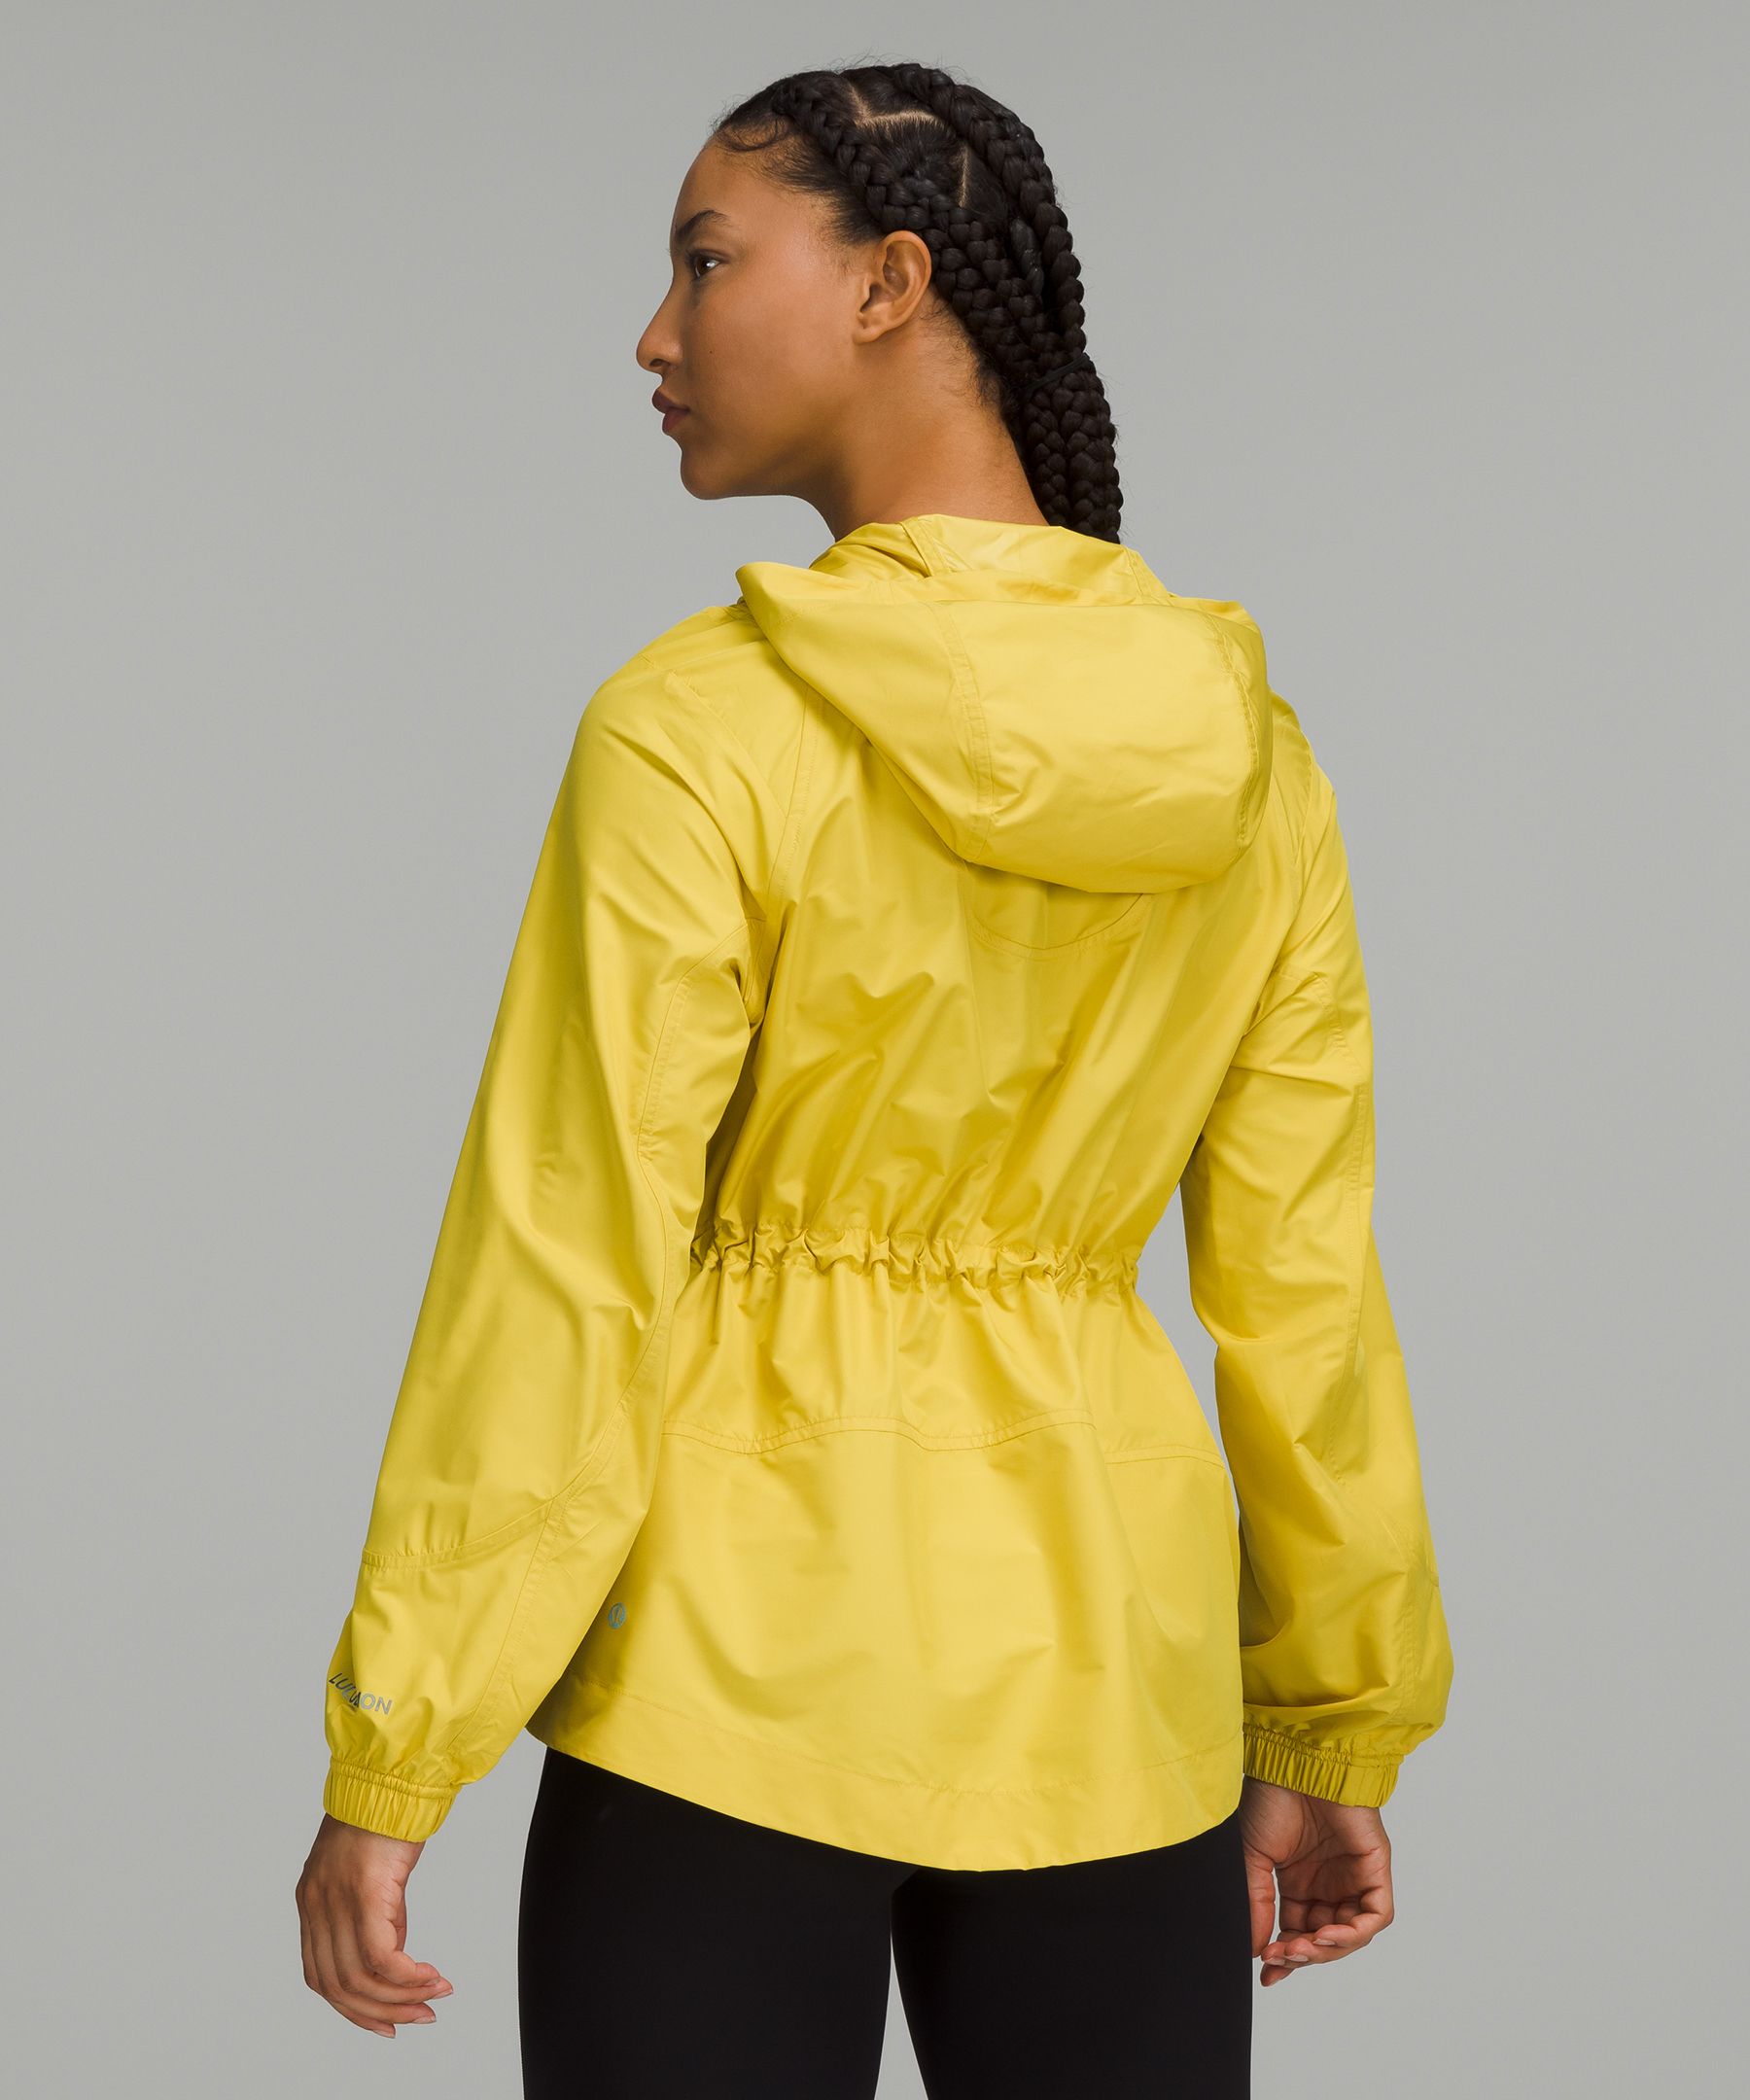 Cinch-Waist Half-Zip Running Jacket | Women's Coats & Jackets 